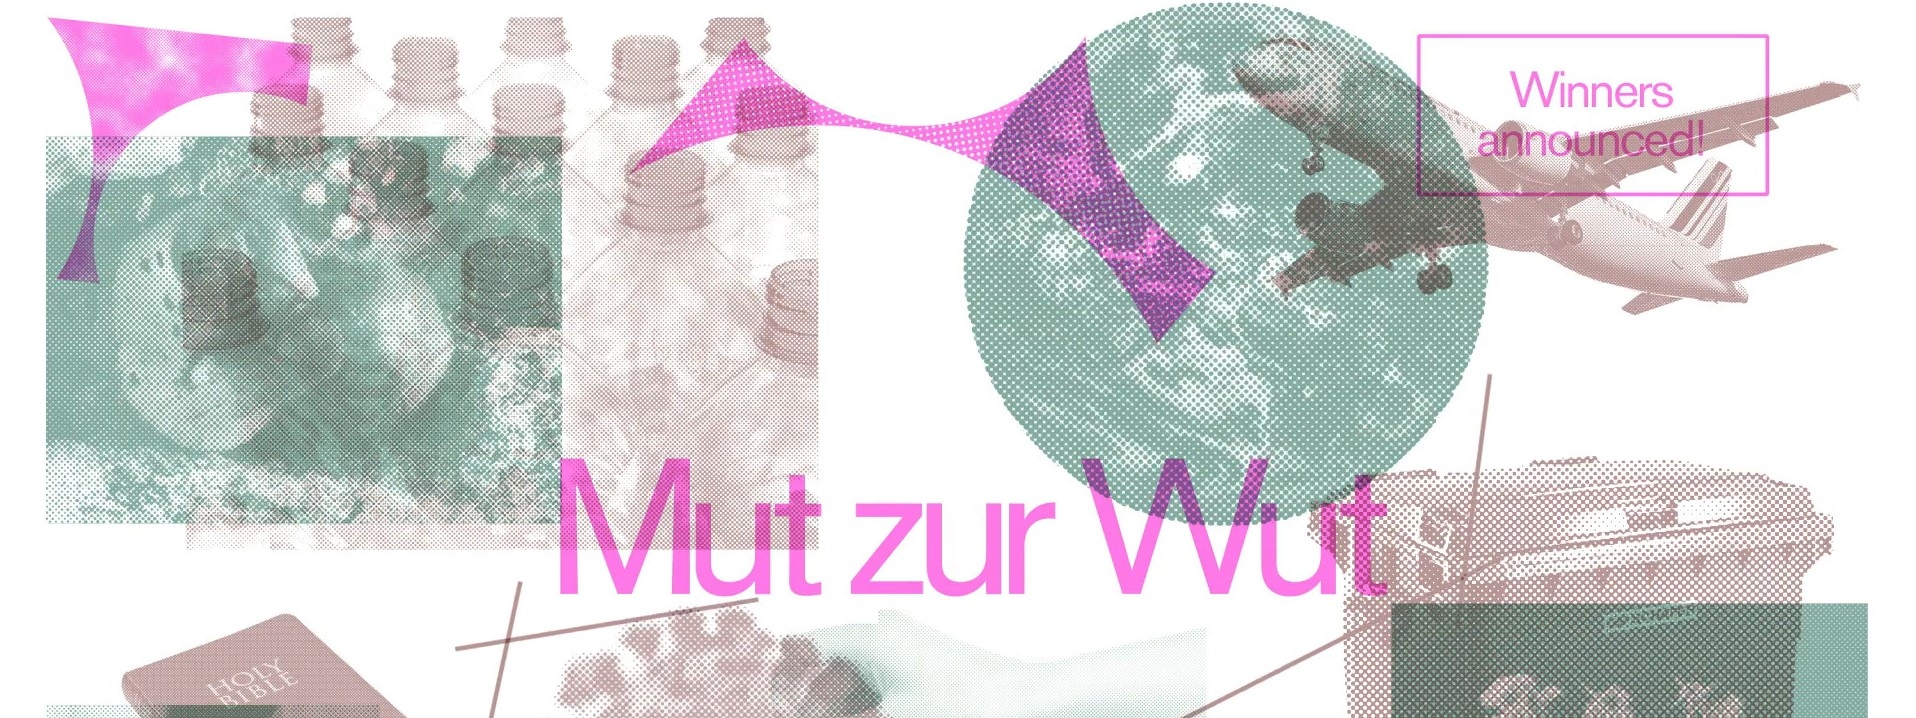 1 3.EW MutZurWut Website Winner annoncement 1